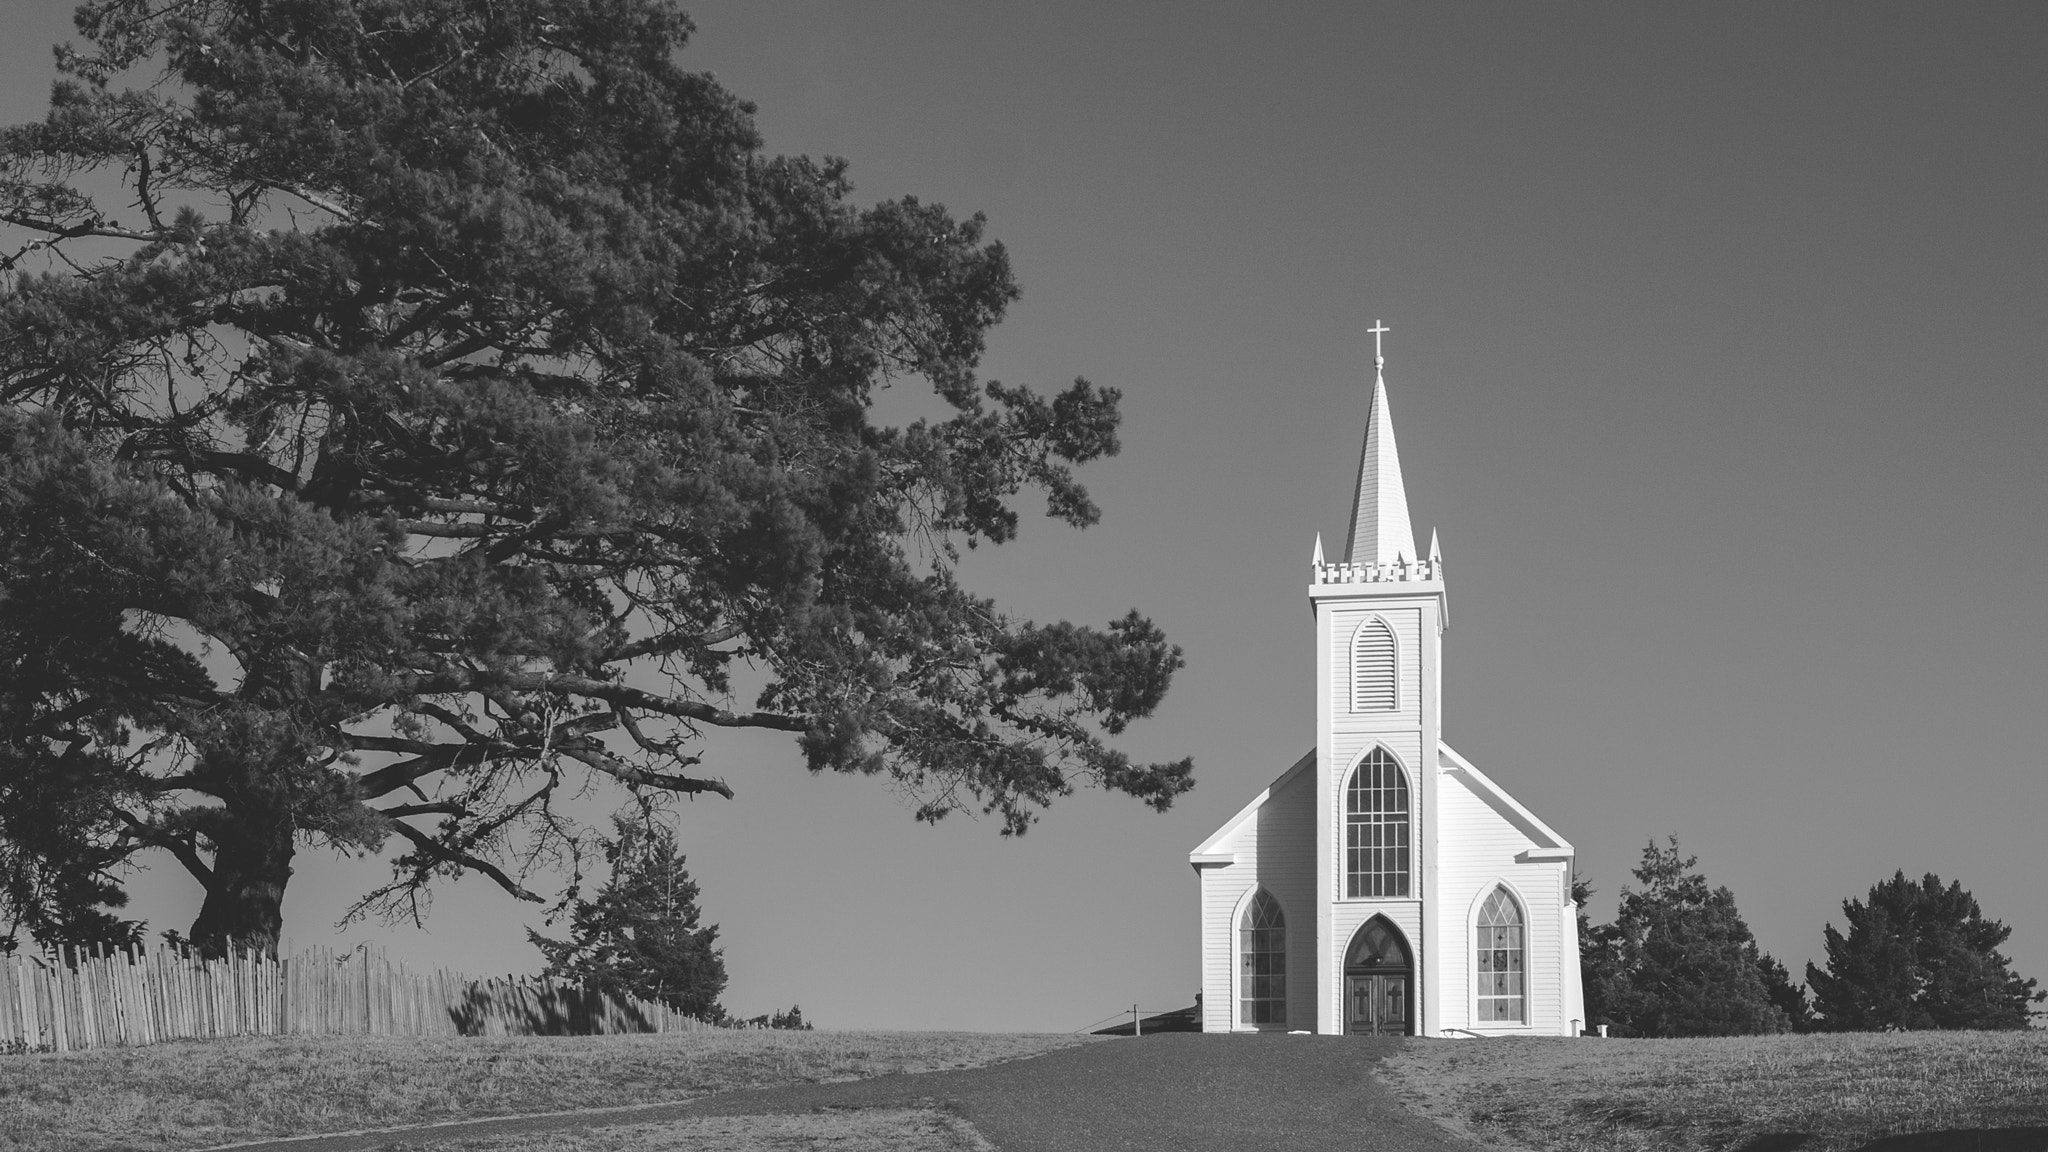 Canon EOS 40D sample photo. Bodega church photography